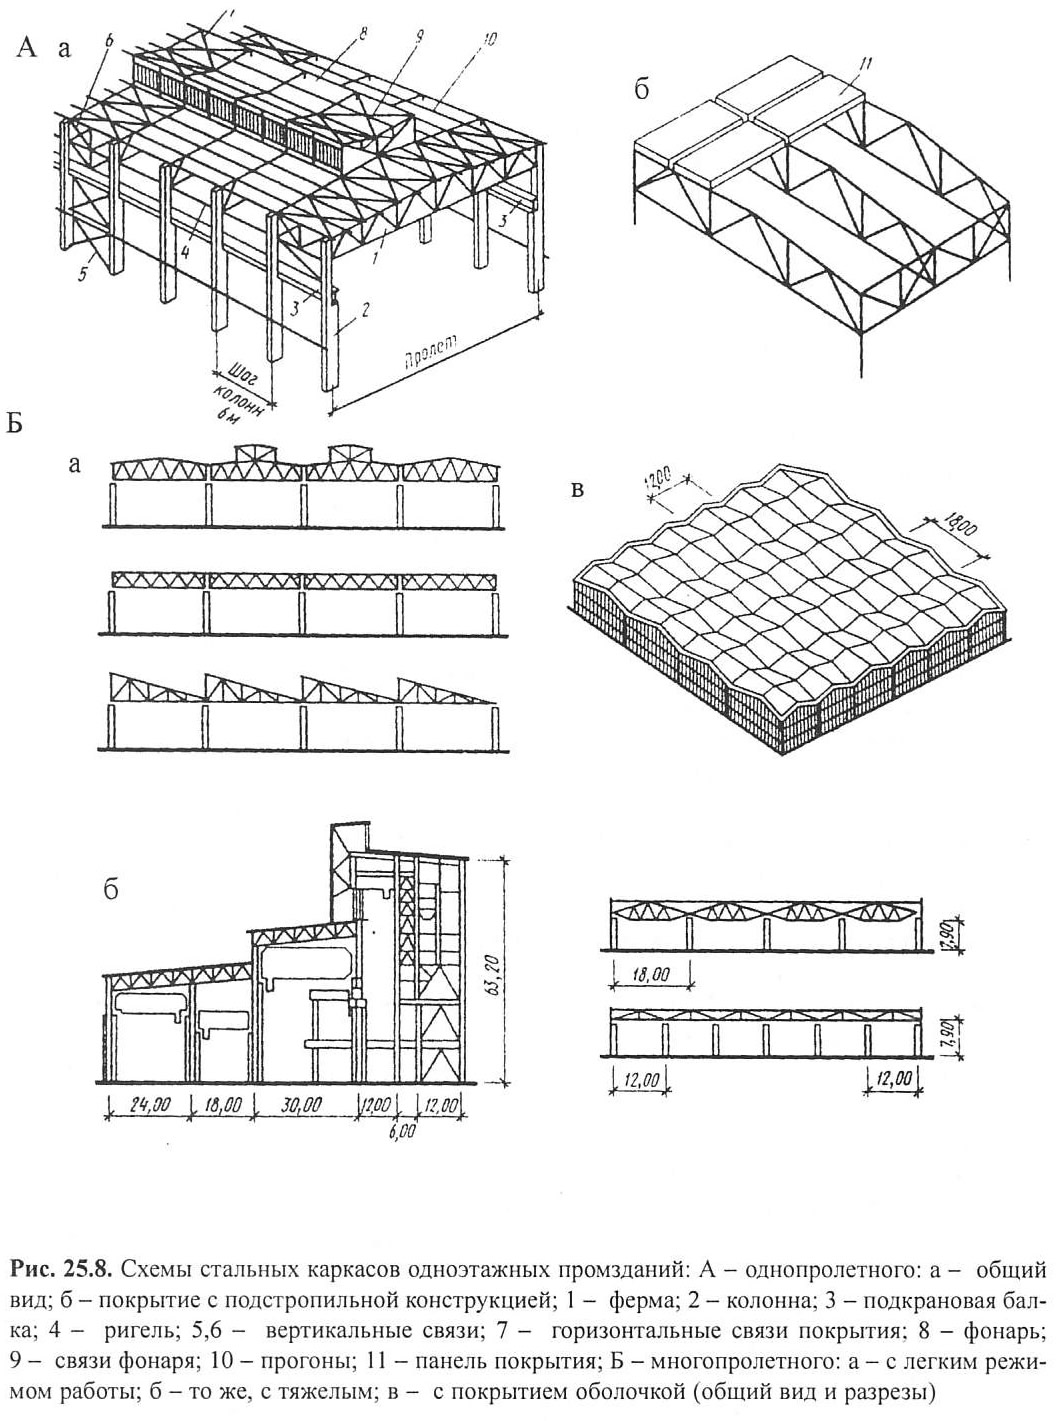 Элементы производственных зданий. Конструктивные схемы одноэтажных промзданий. Конструктивные схемы одноэтажных каркасных зданий.. Конструктивная схема промздания. Конструктивные схемы стальных каркасов.